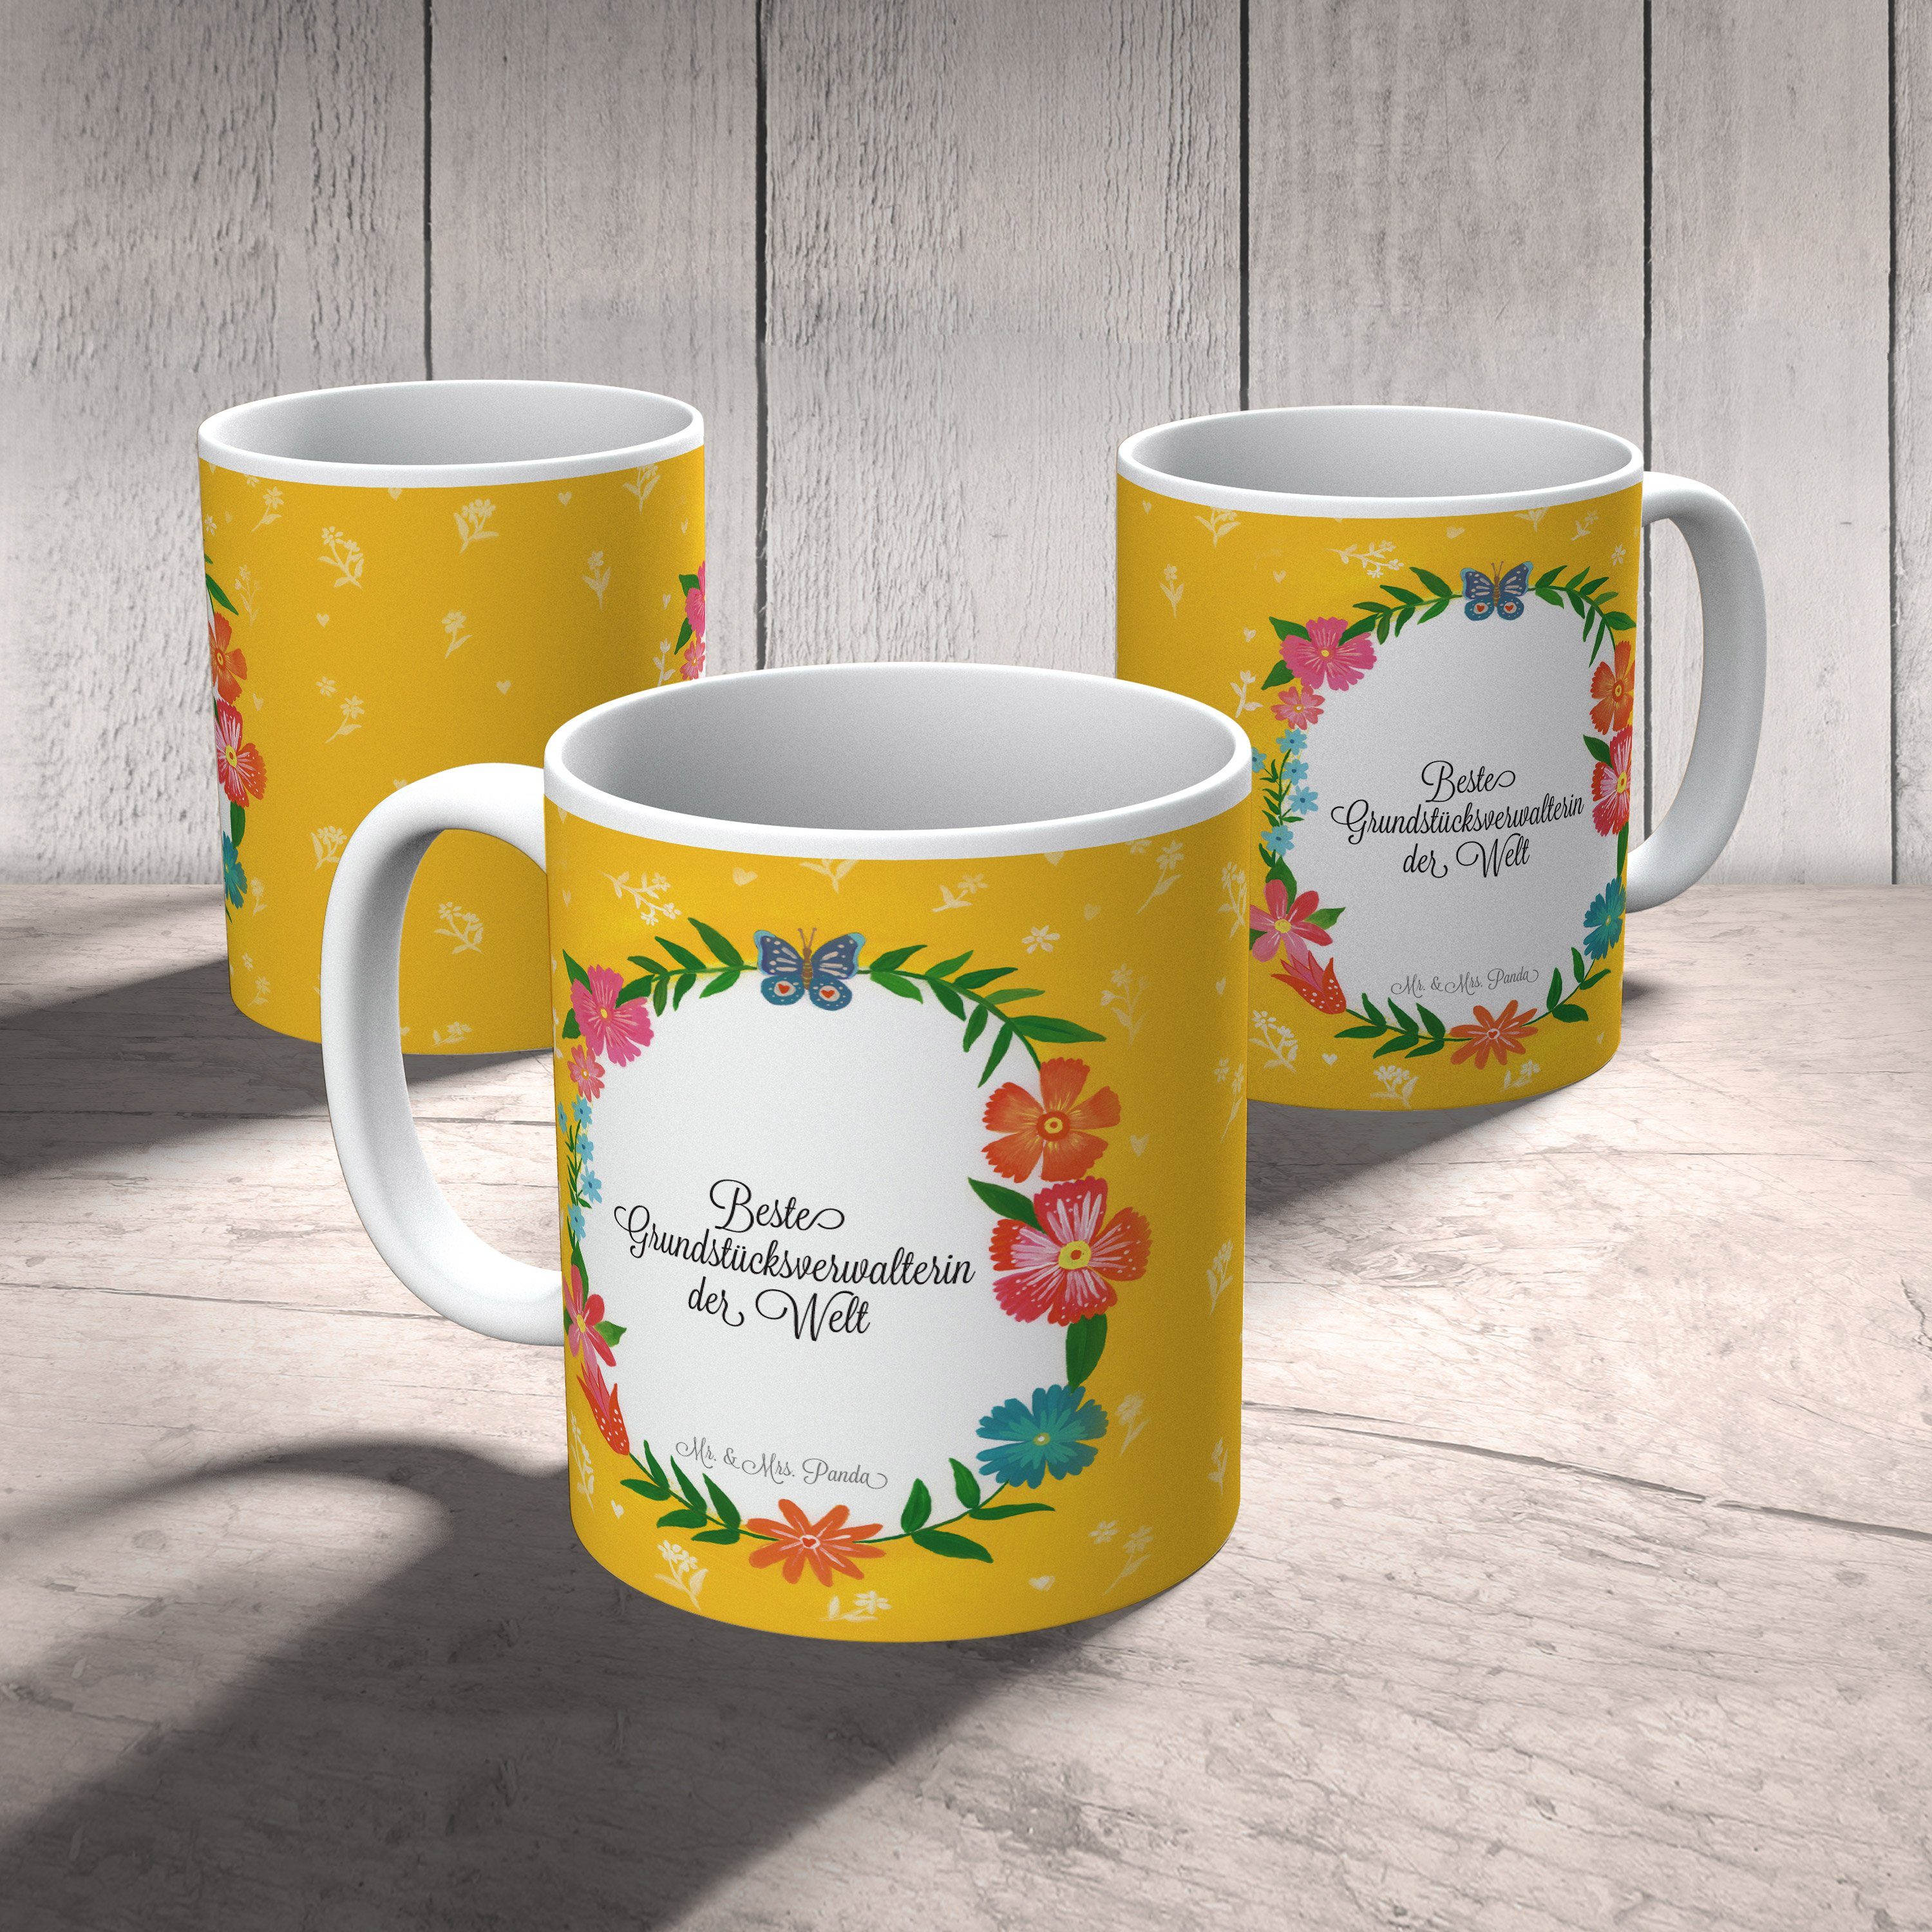 Kaffee, Geschenk, Rente, Tasse & - Abschluss, Keramik Mr. Mrs. Abschied, Panda Grundstücksverwalterin